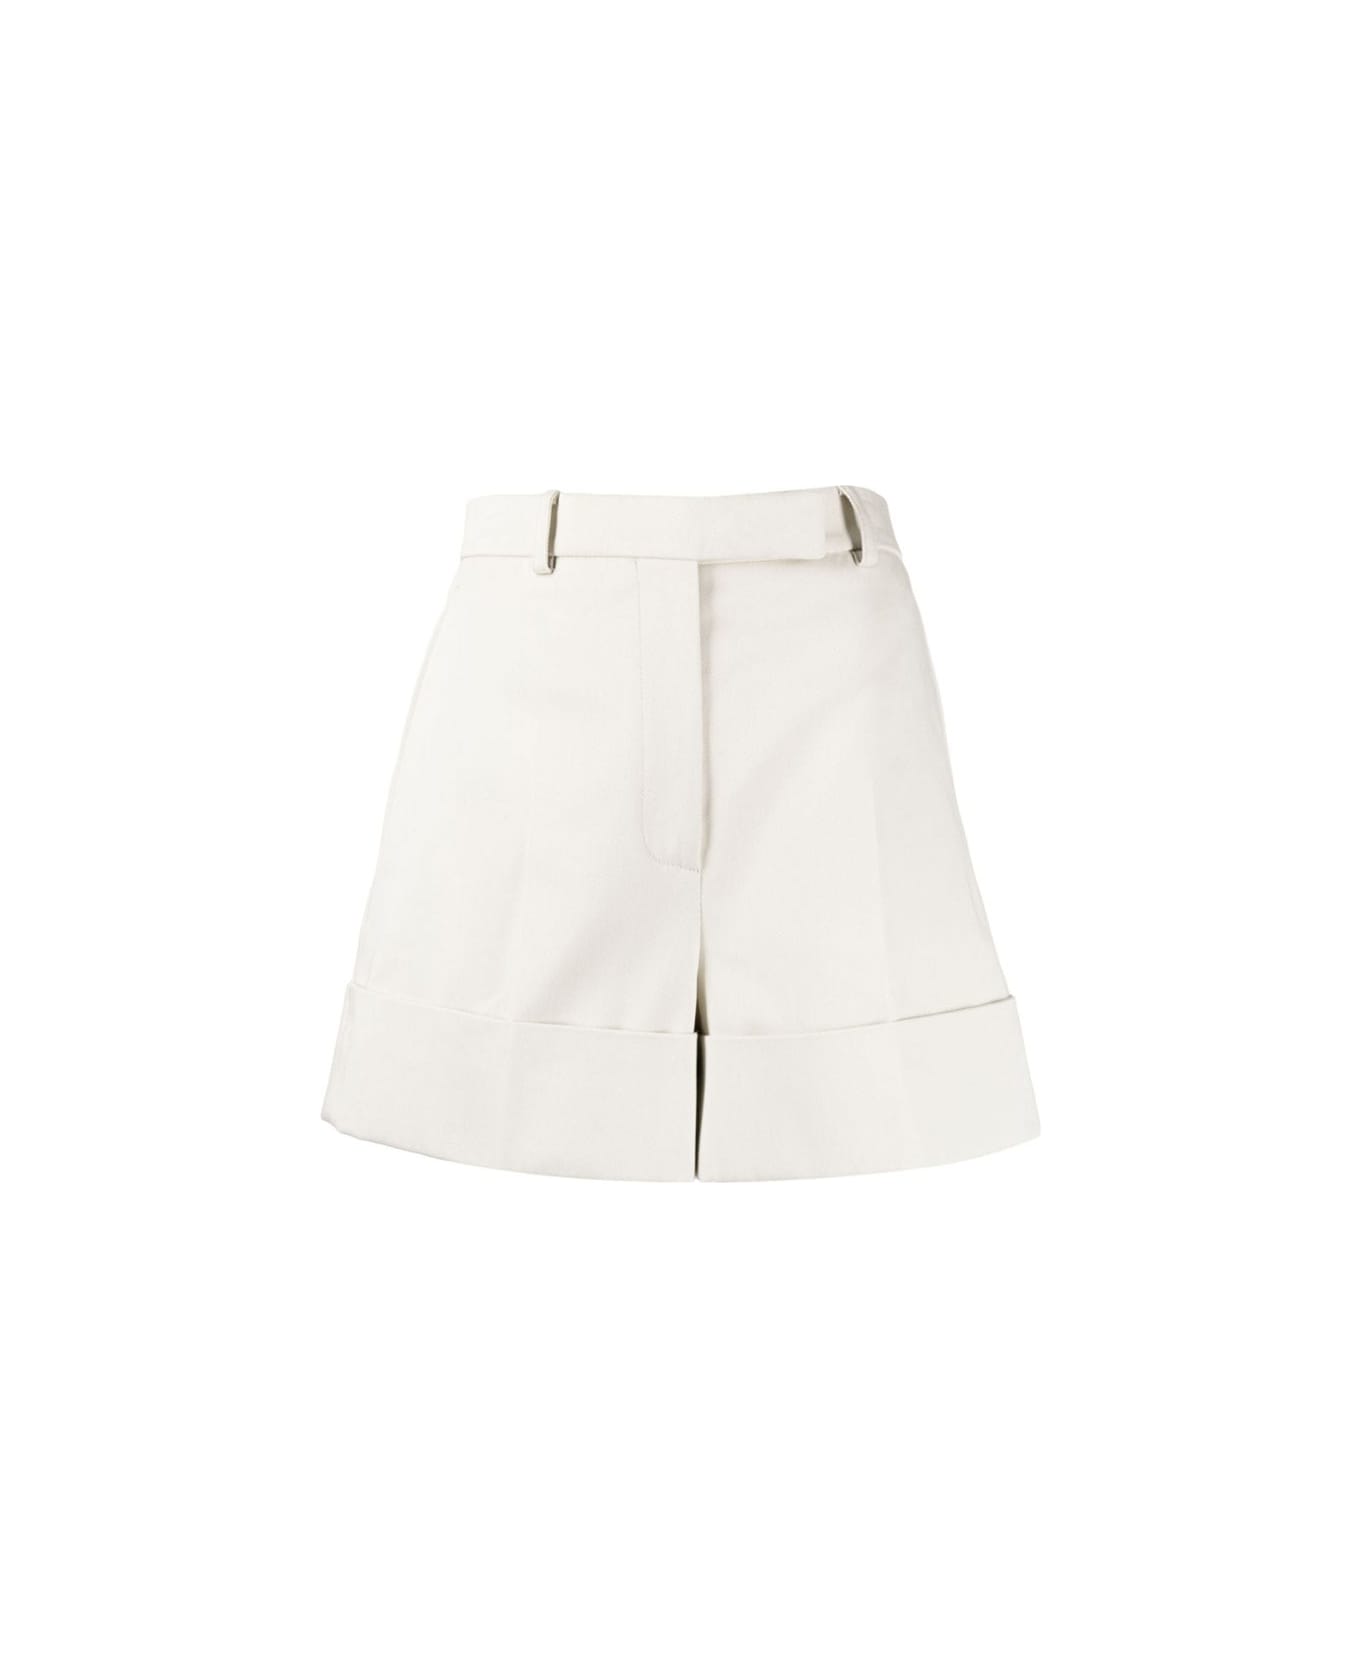 Thom Browne White Cotton Shorts - NATURAL WHITE ショートパンツ